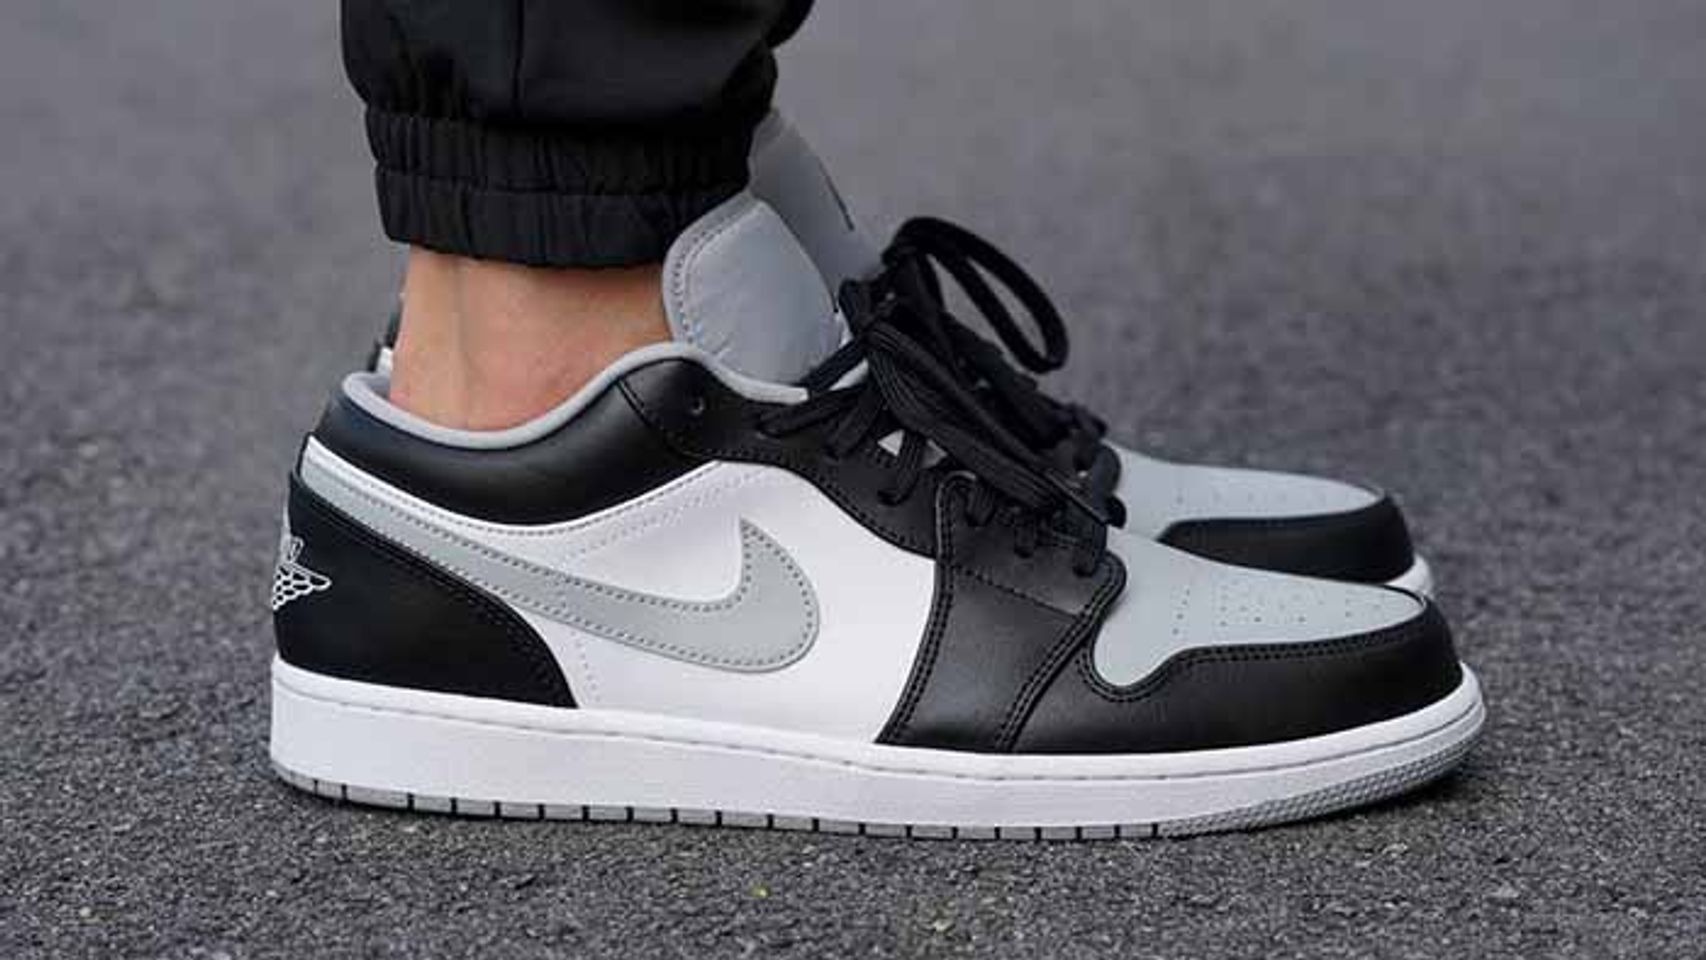 Giày thể thao Nike Jordan 1 Low Smoke Grey màu đen trắng